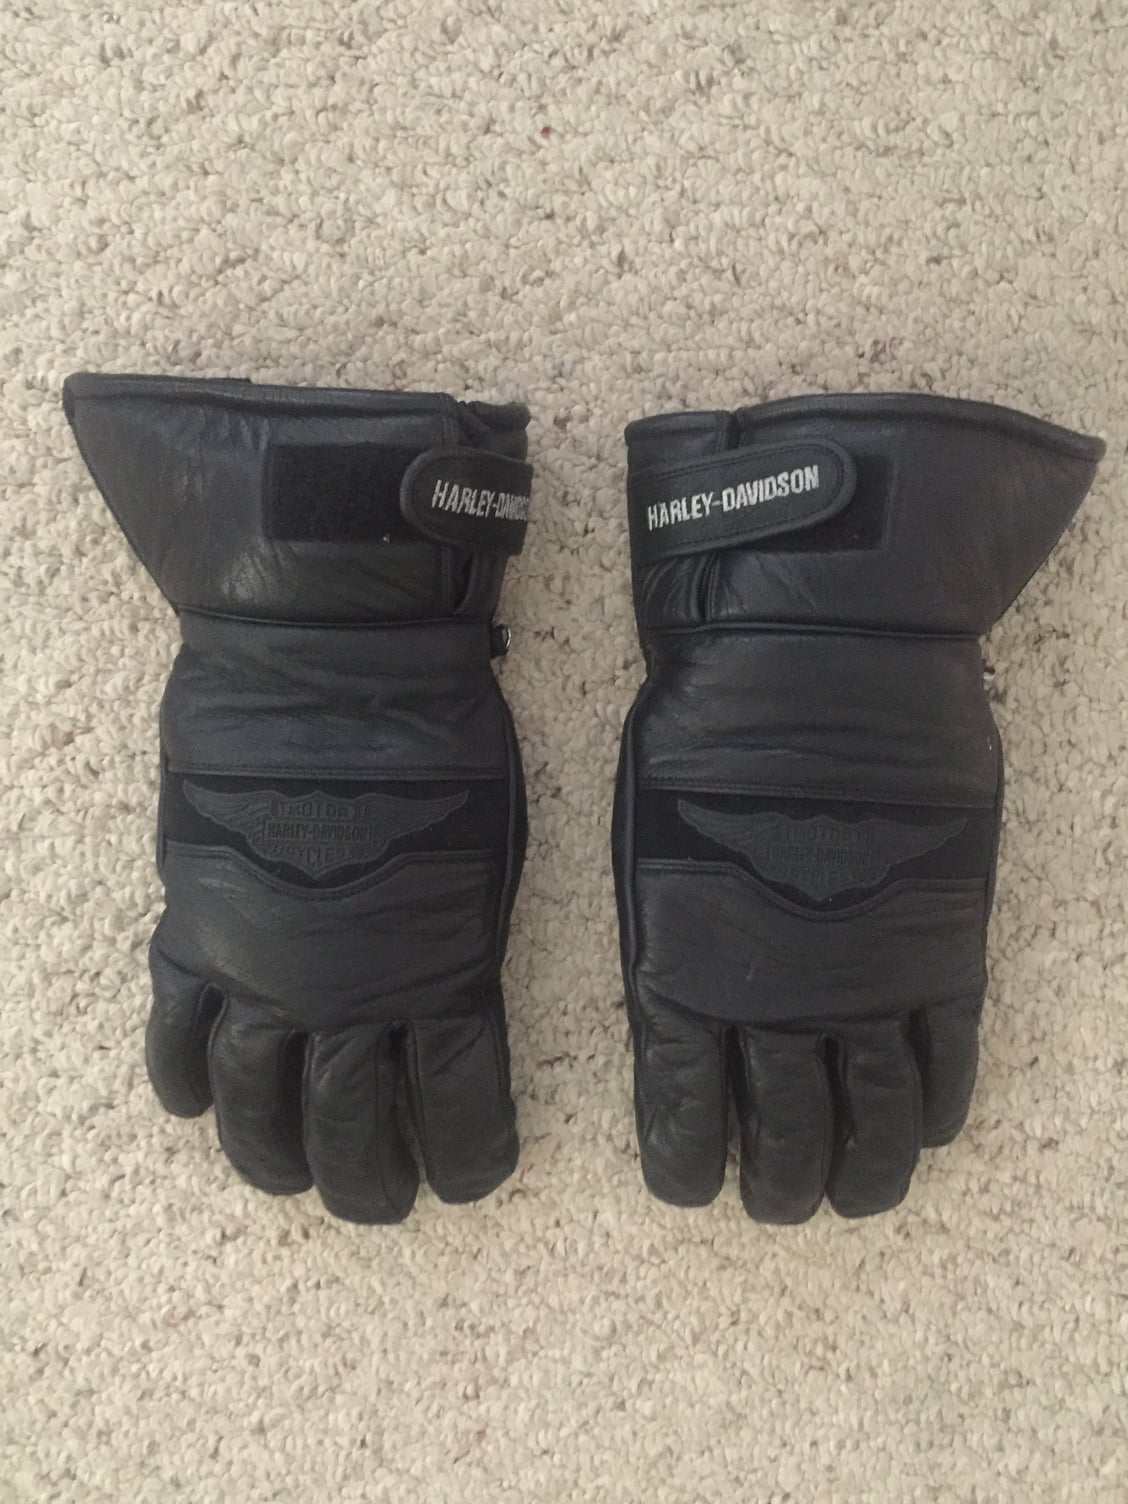 Harley Cold Weather Gauntlet Gloves - Harley Davidson Forums